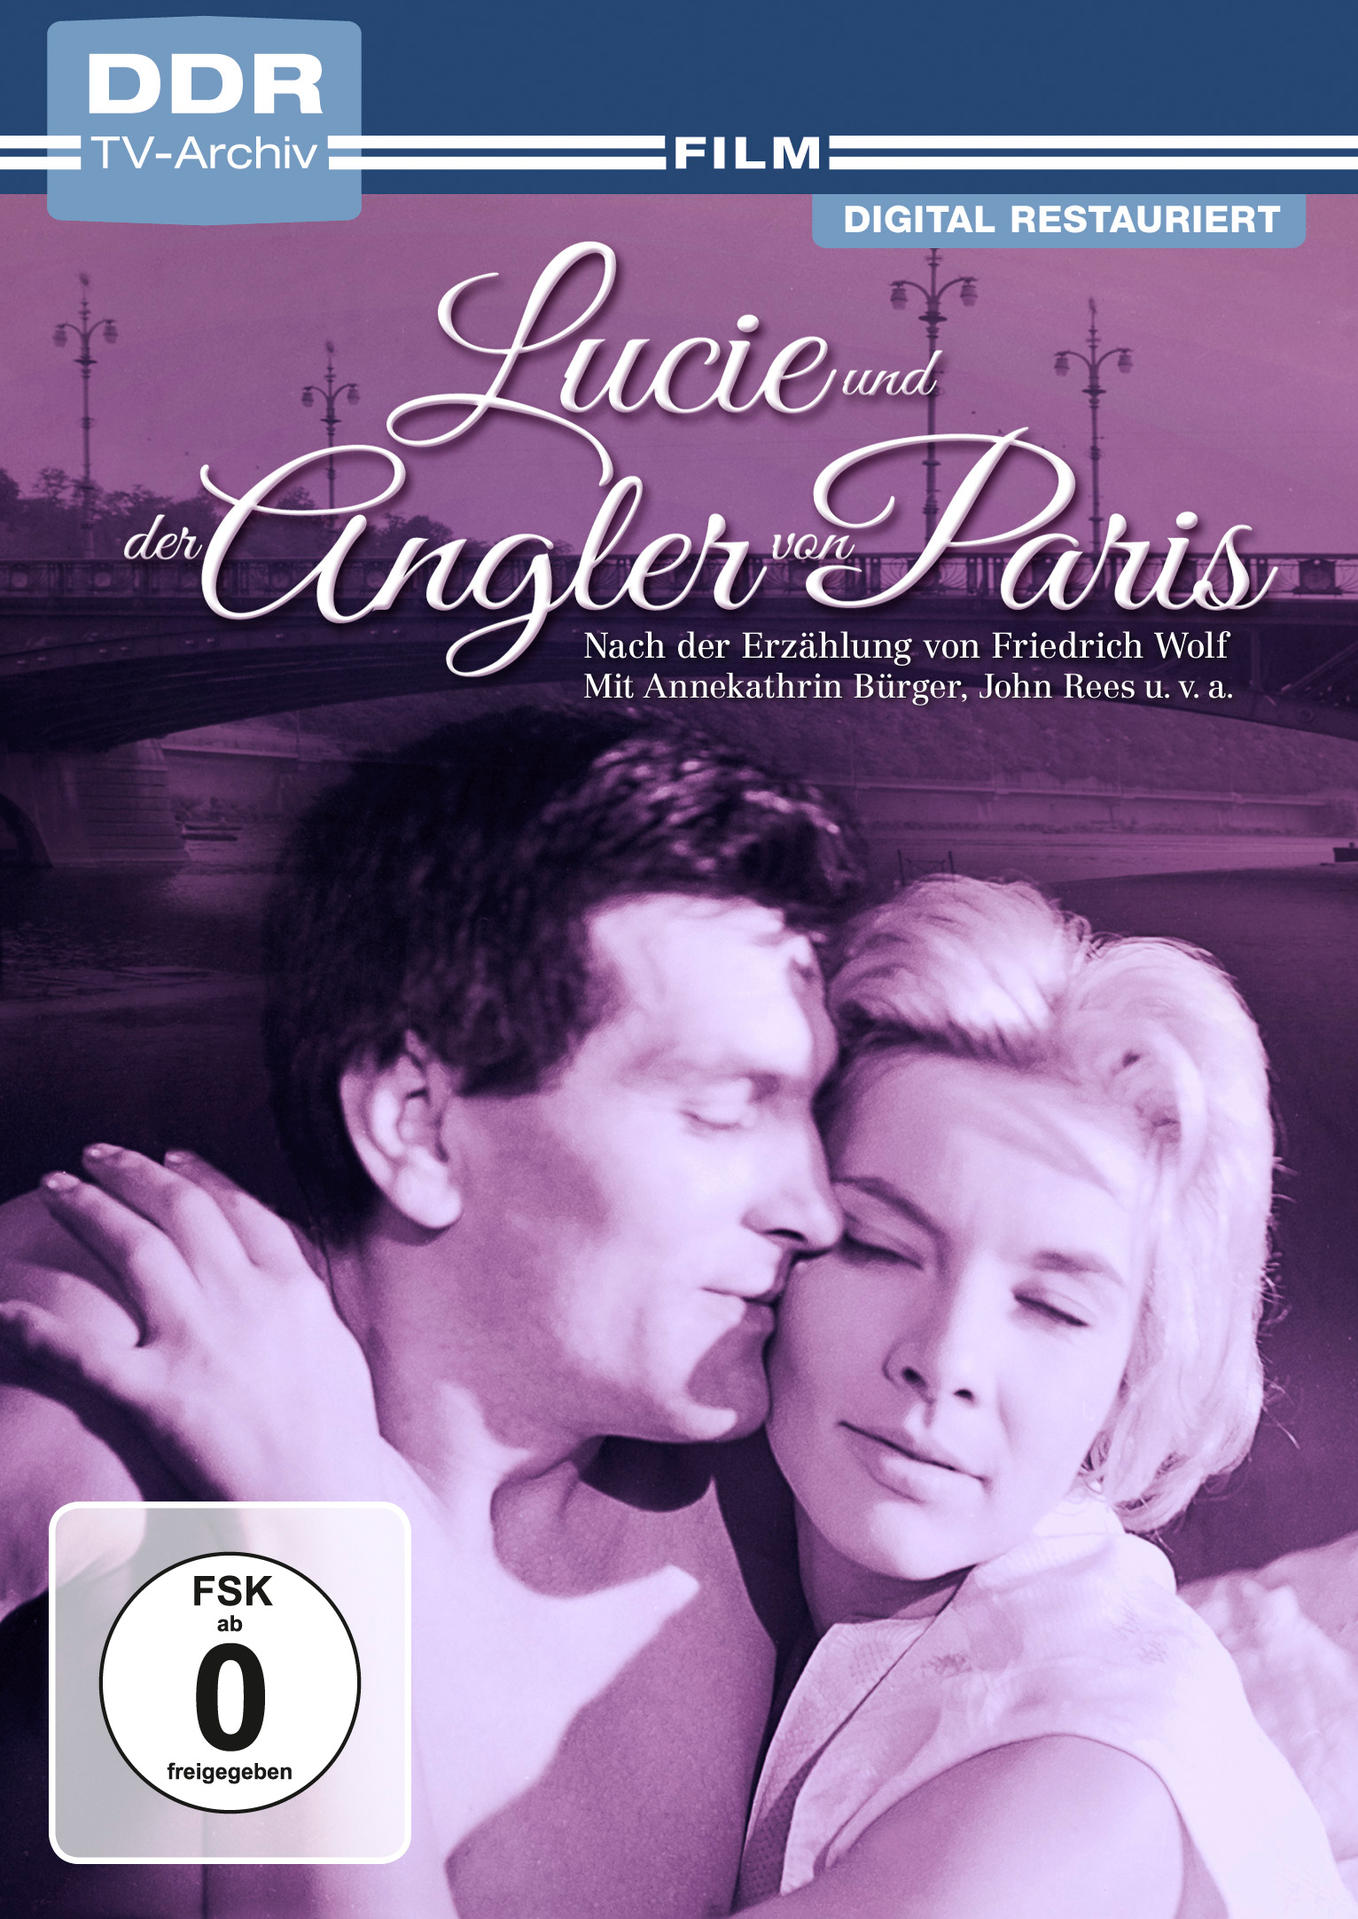 ANGLER PARIS UND DVD VON DER LUCIE